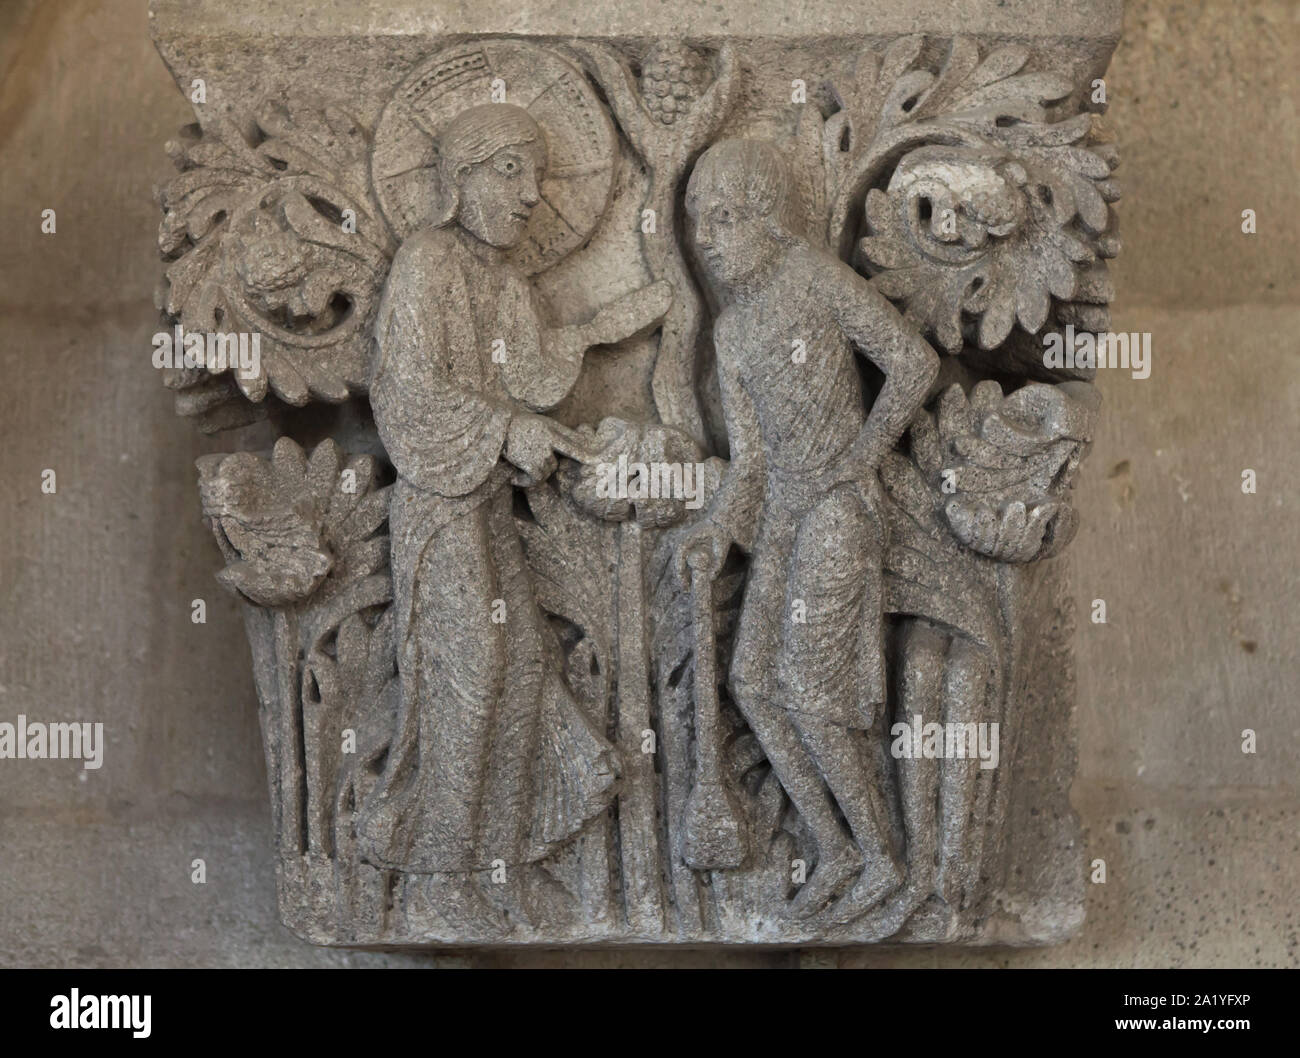 Gott fragt Kain in der Romanischen Kapital aus dem 12. Jahrhundert datiert aus dem Autun Dom (Kathedrale Saint-Lazare d'Autun) dargestellt, nun im Kapitel Bibliothek der Kathedrale von Autun Autun, Burgund, Frankreich. Die Hauptstadt wurde wahrscheinlich von französischen Romanische Bildhauer Gislebertus geschnitzt. Stockfoto